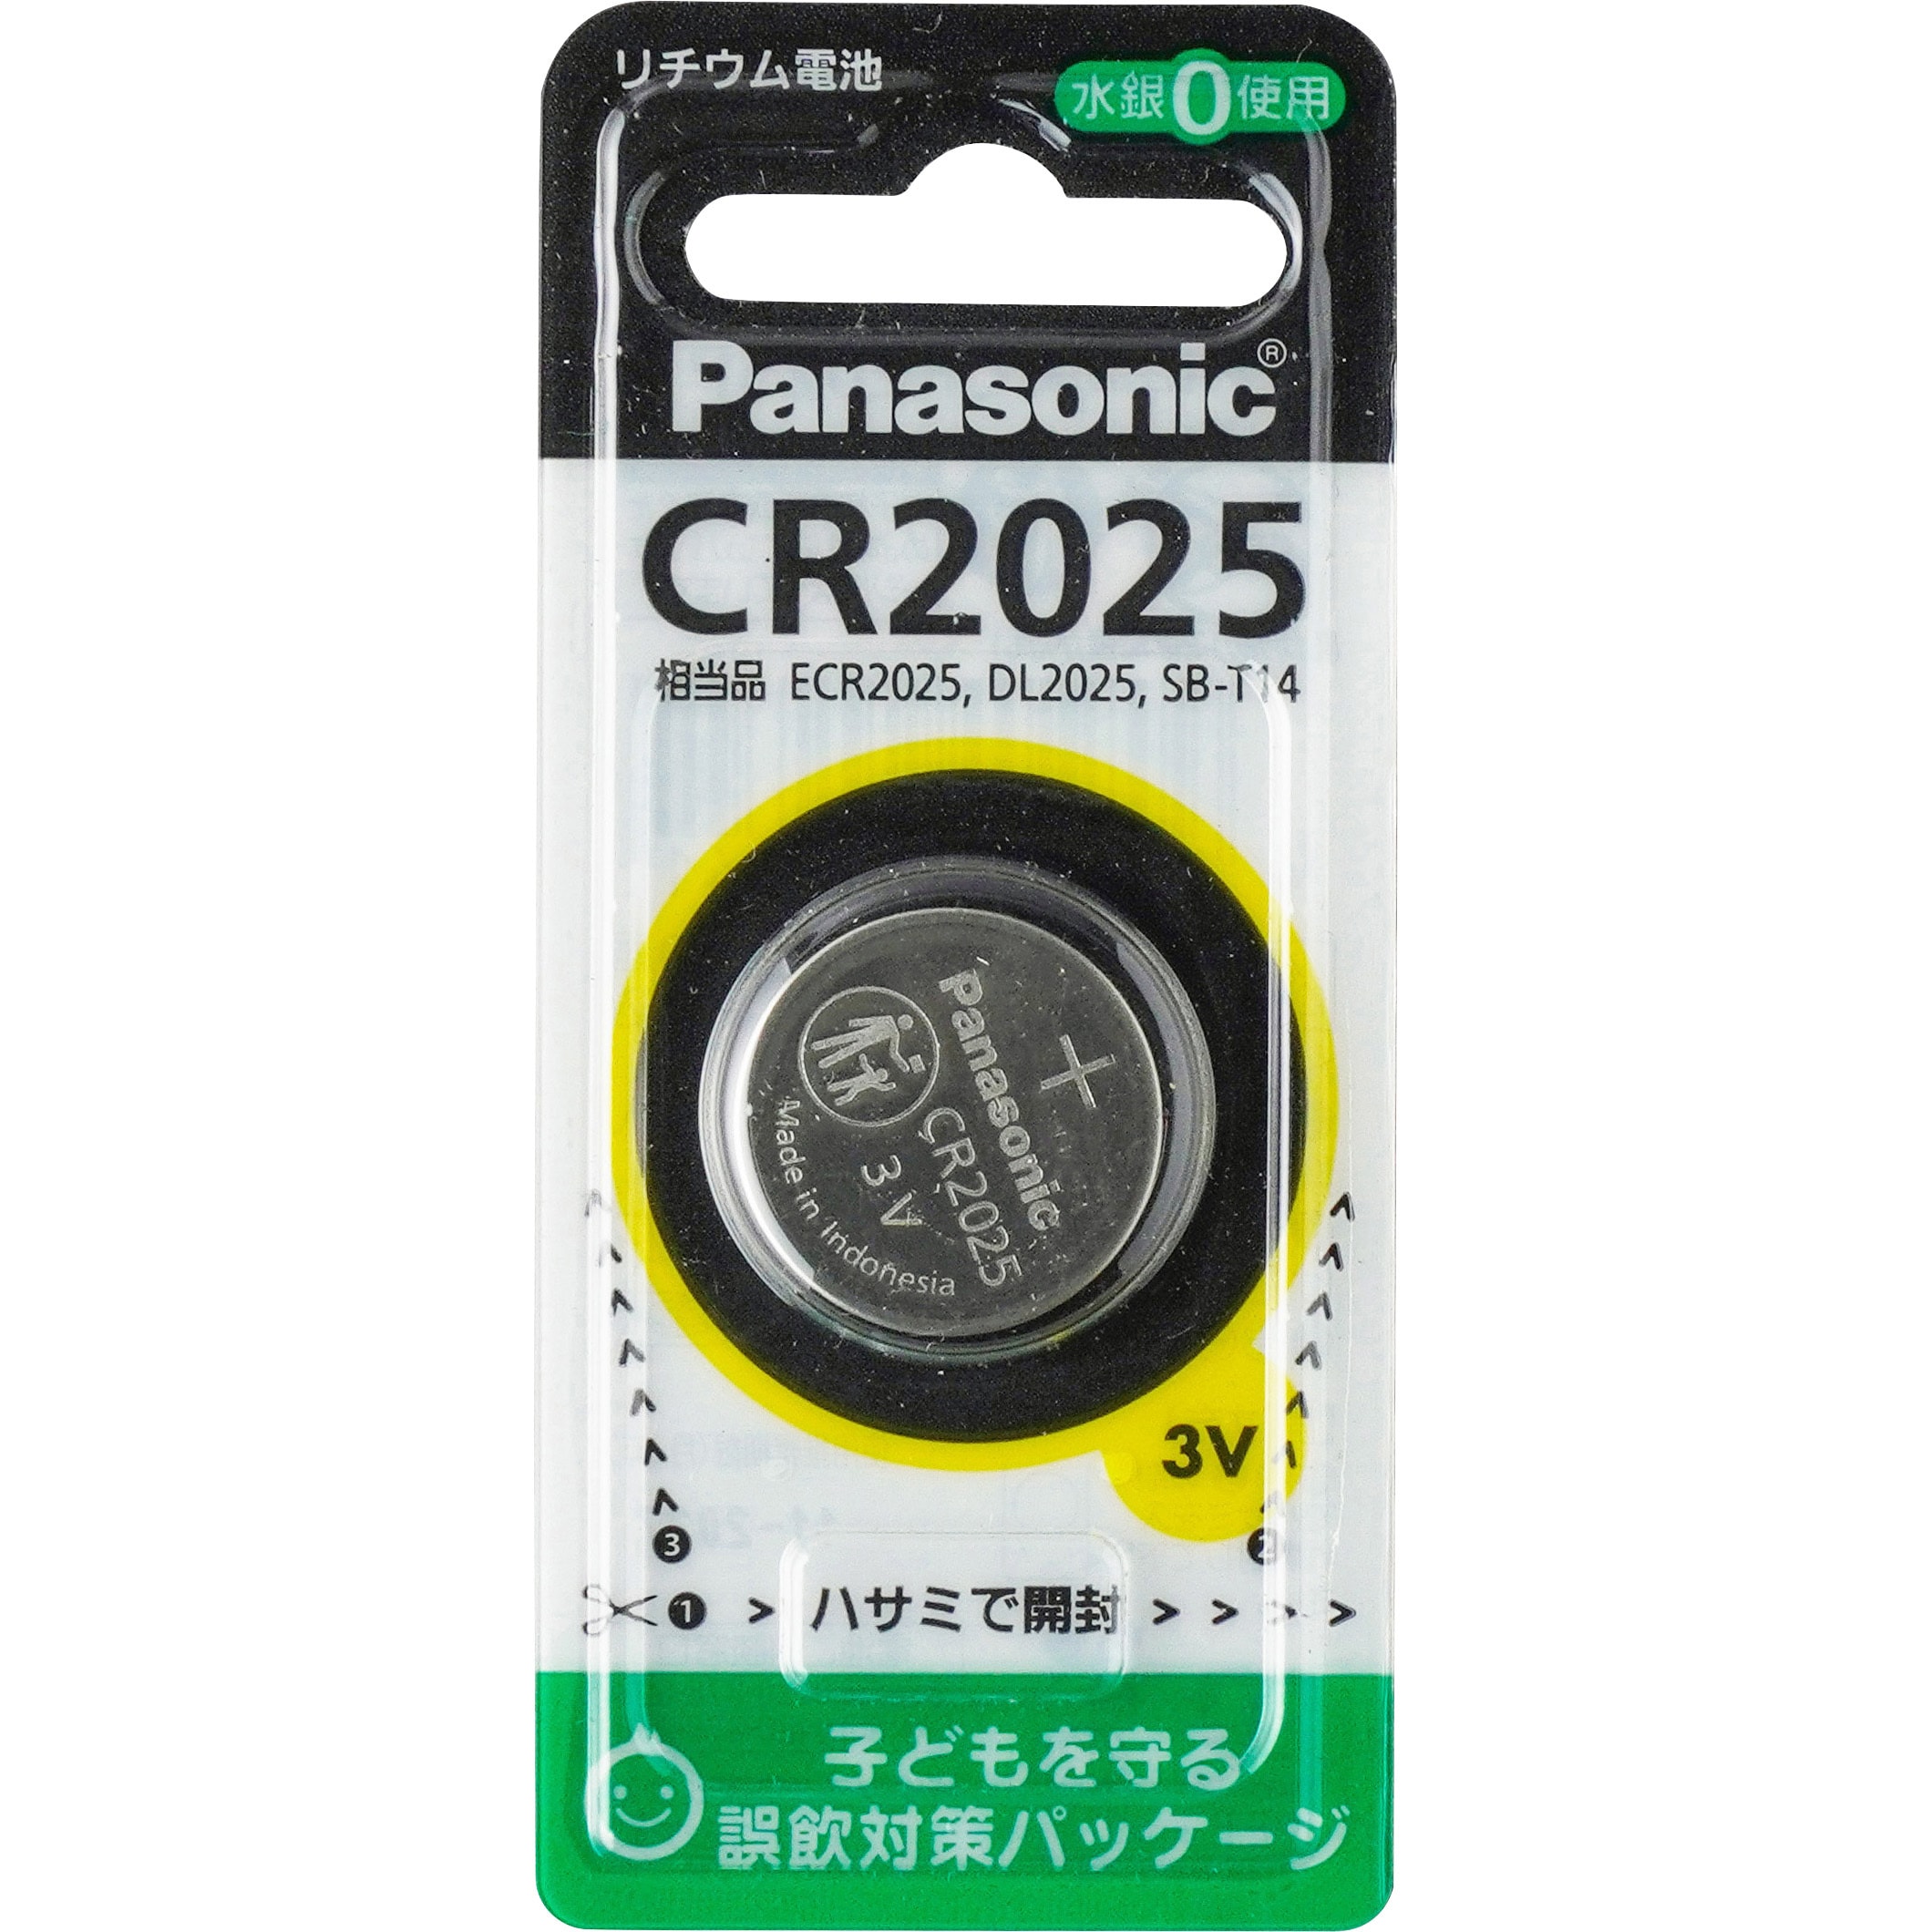 CR2025 コイン形リチウム電池 1個 パナソニック(Panasonic) 【通販サイトMonotaRO】